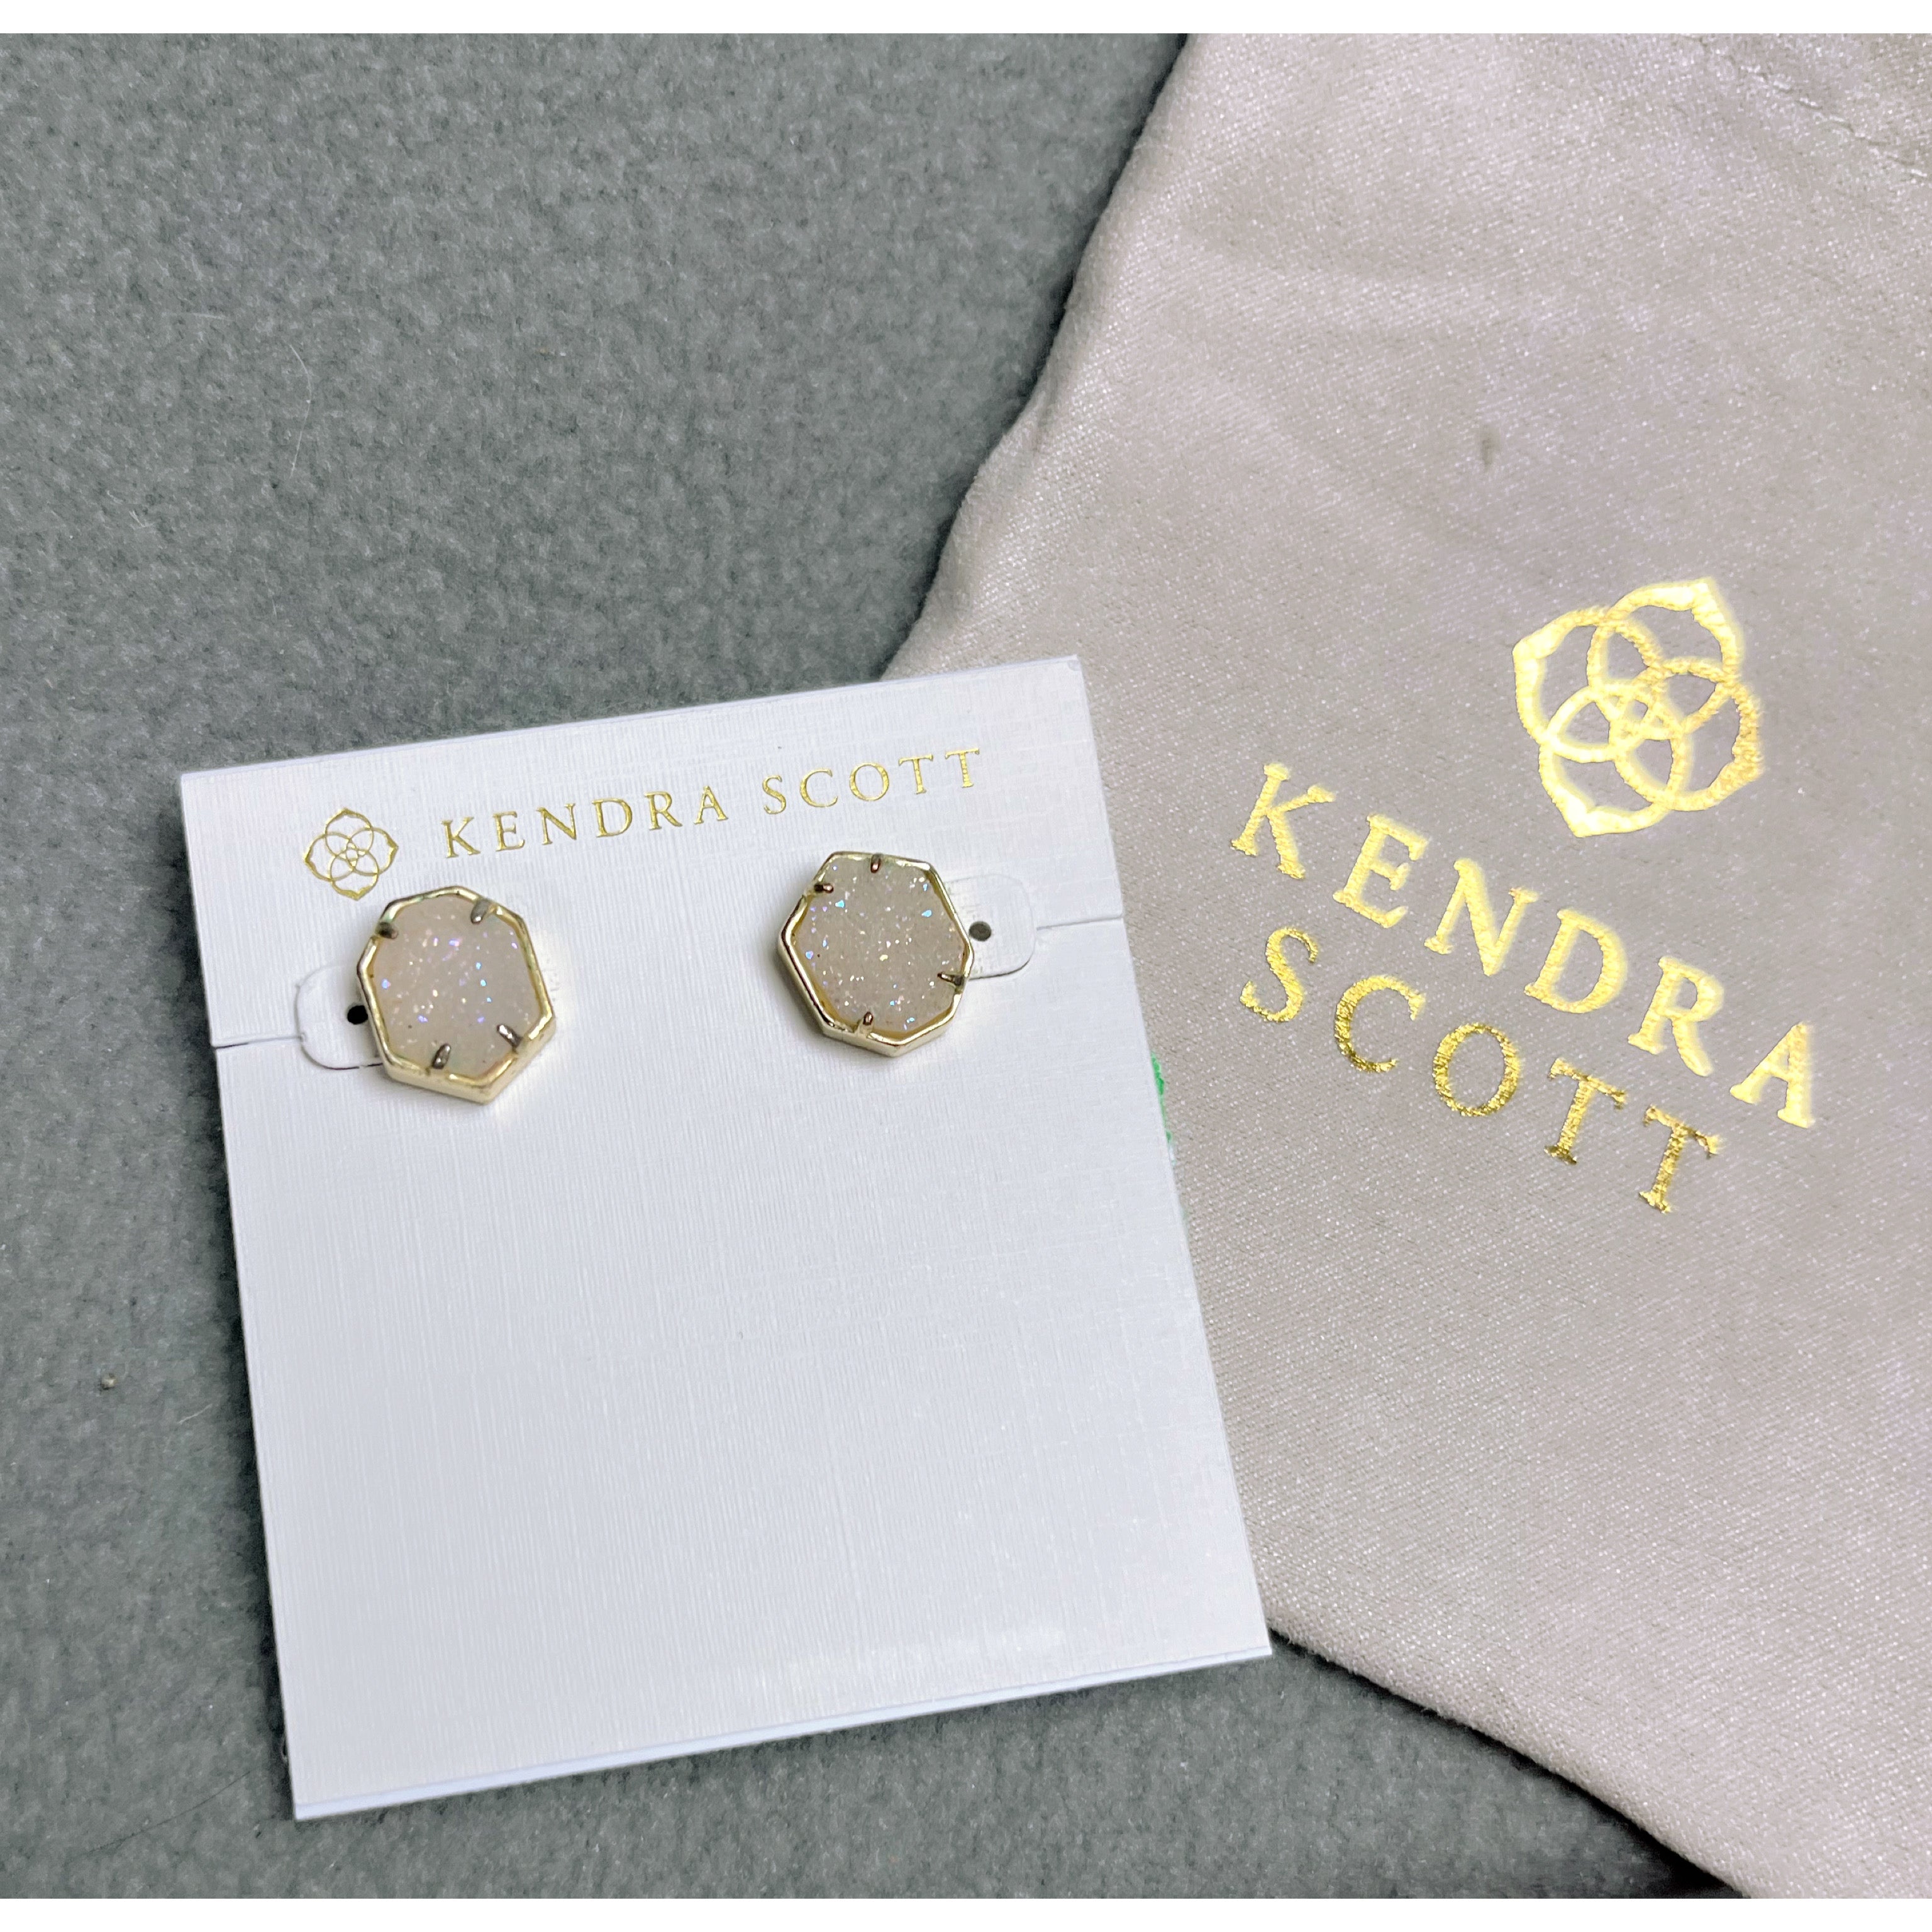 Kendra Scott earrings